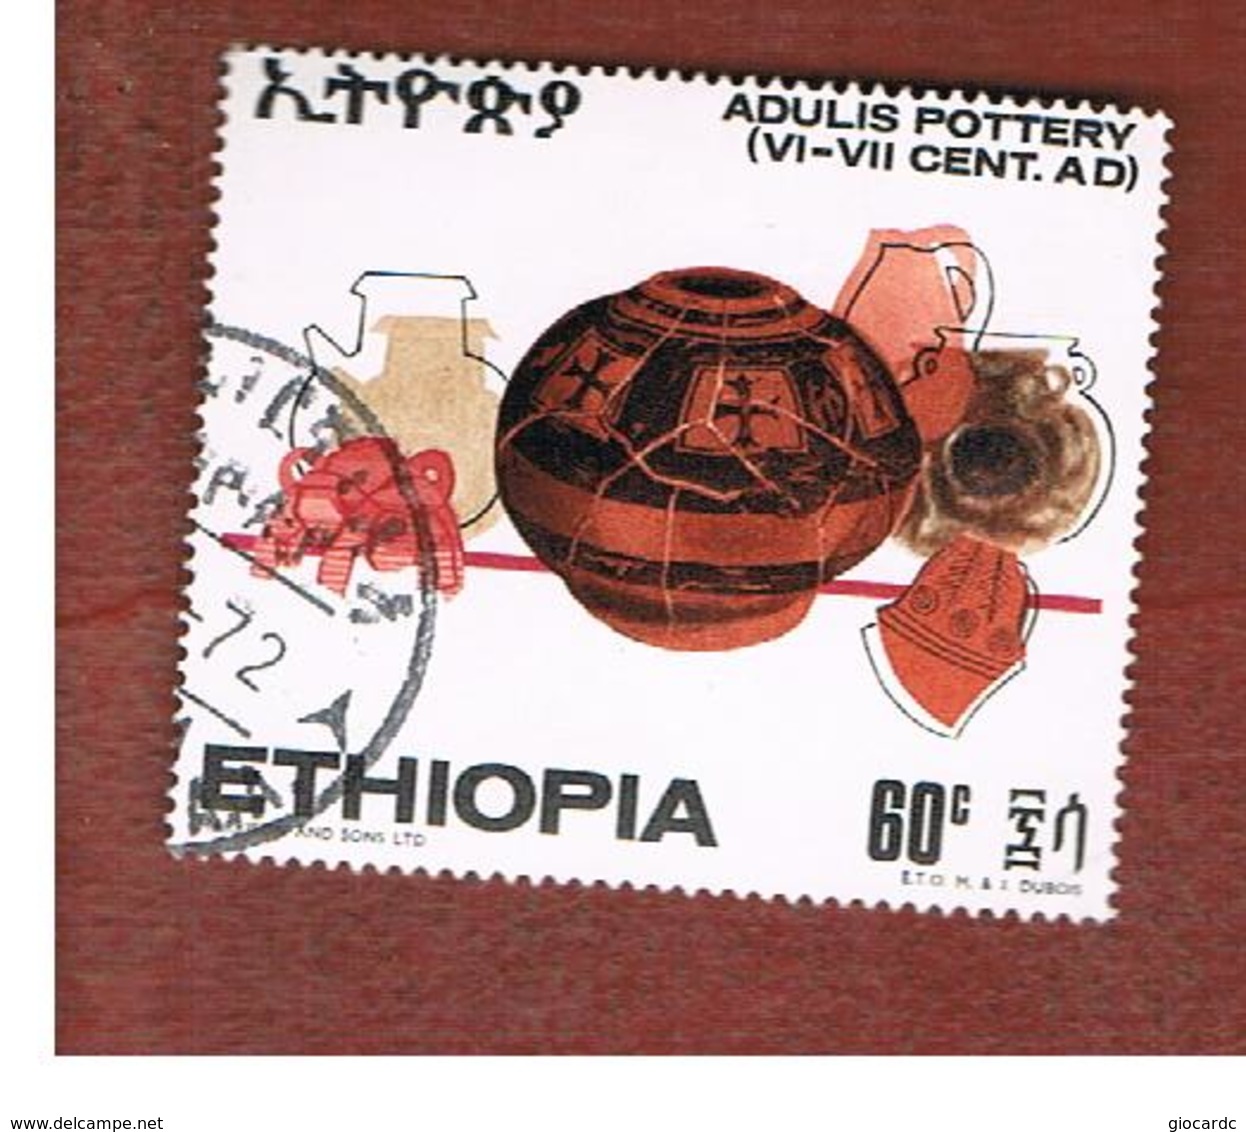 ETIOPIA (ETHIOPIA) -  SG 745  -  1970  ANCIENT POTTERY   - USED ° - Etiopia